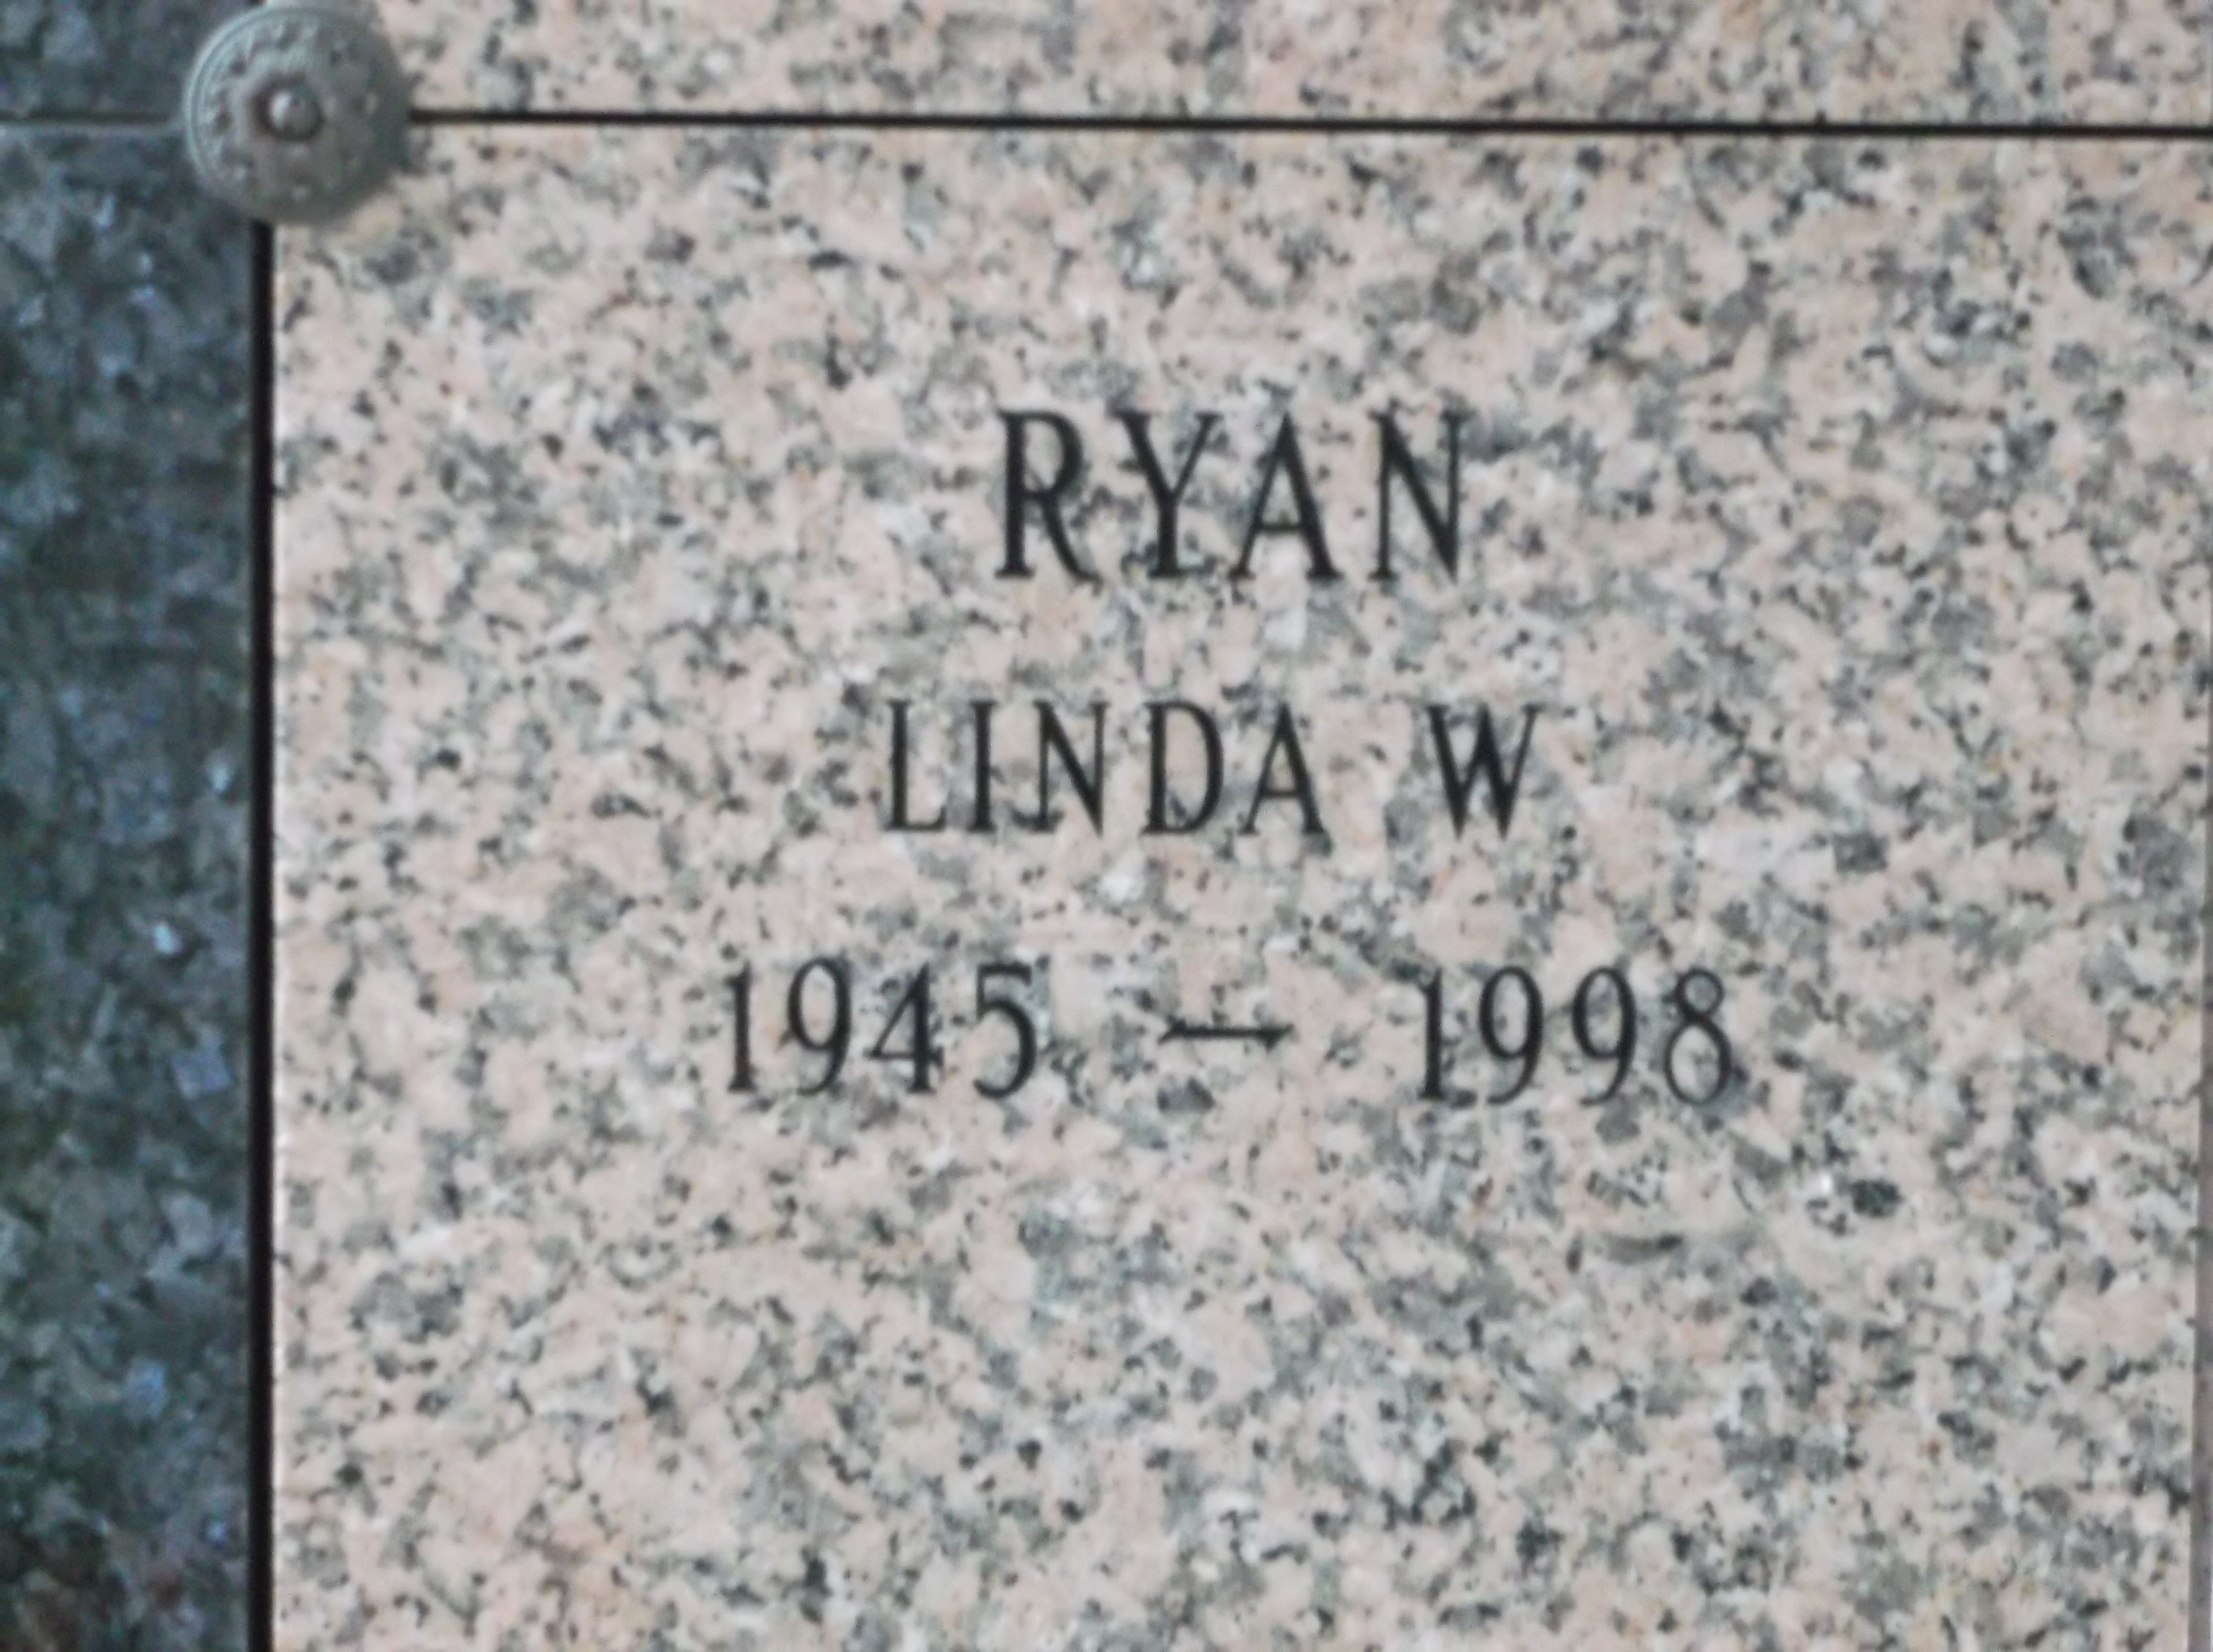 Linda W Ryan